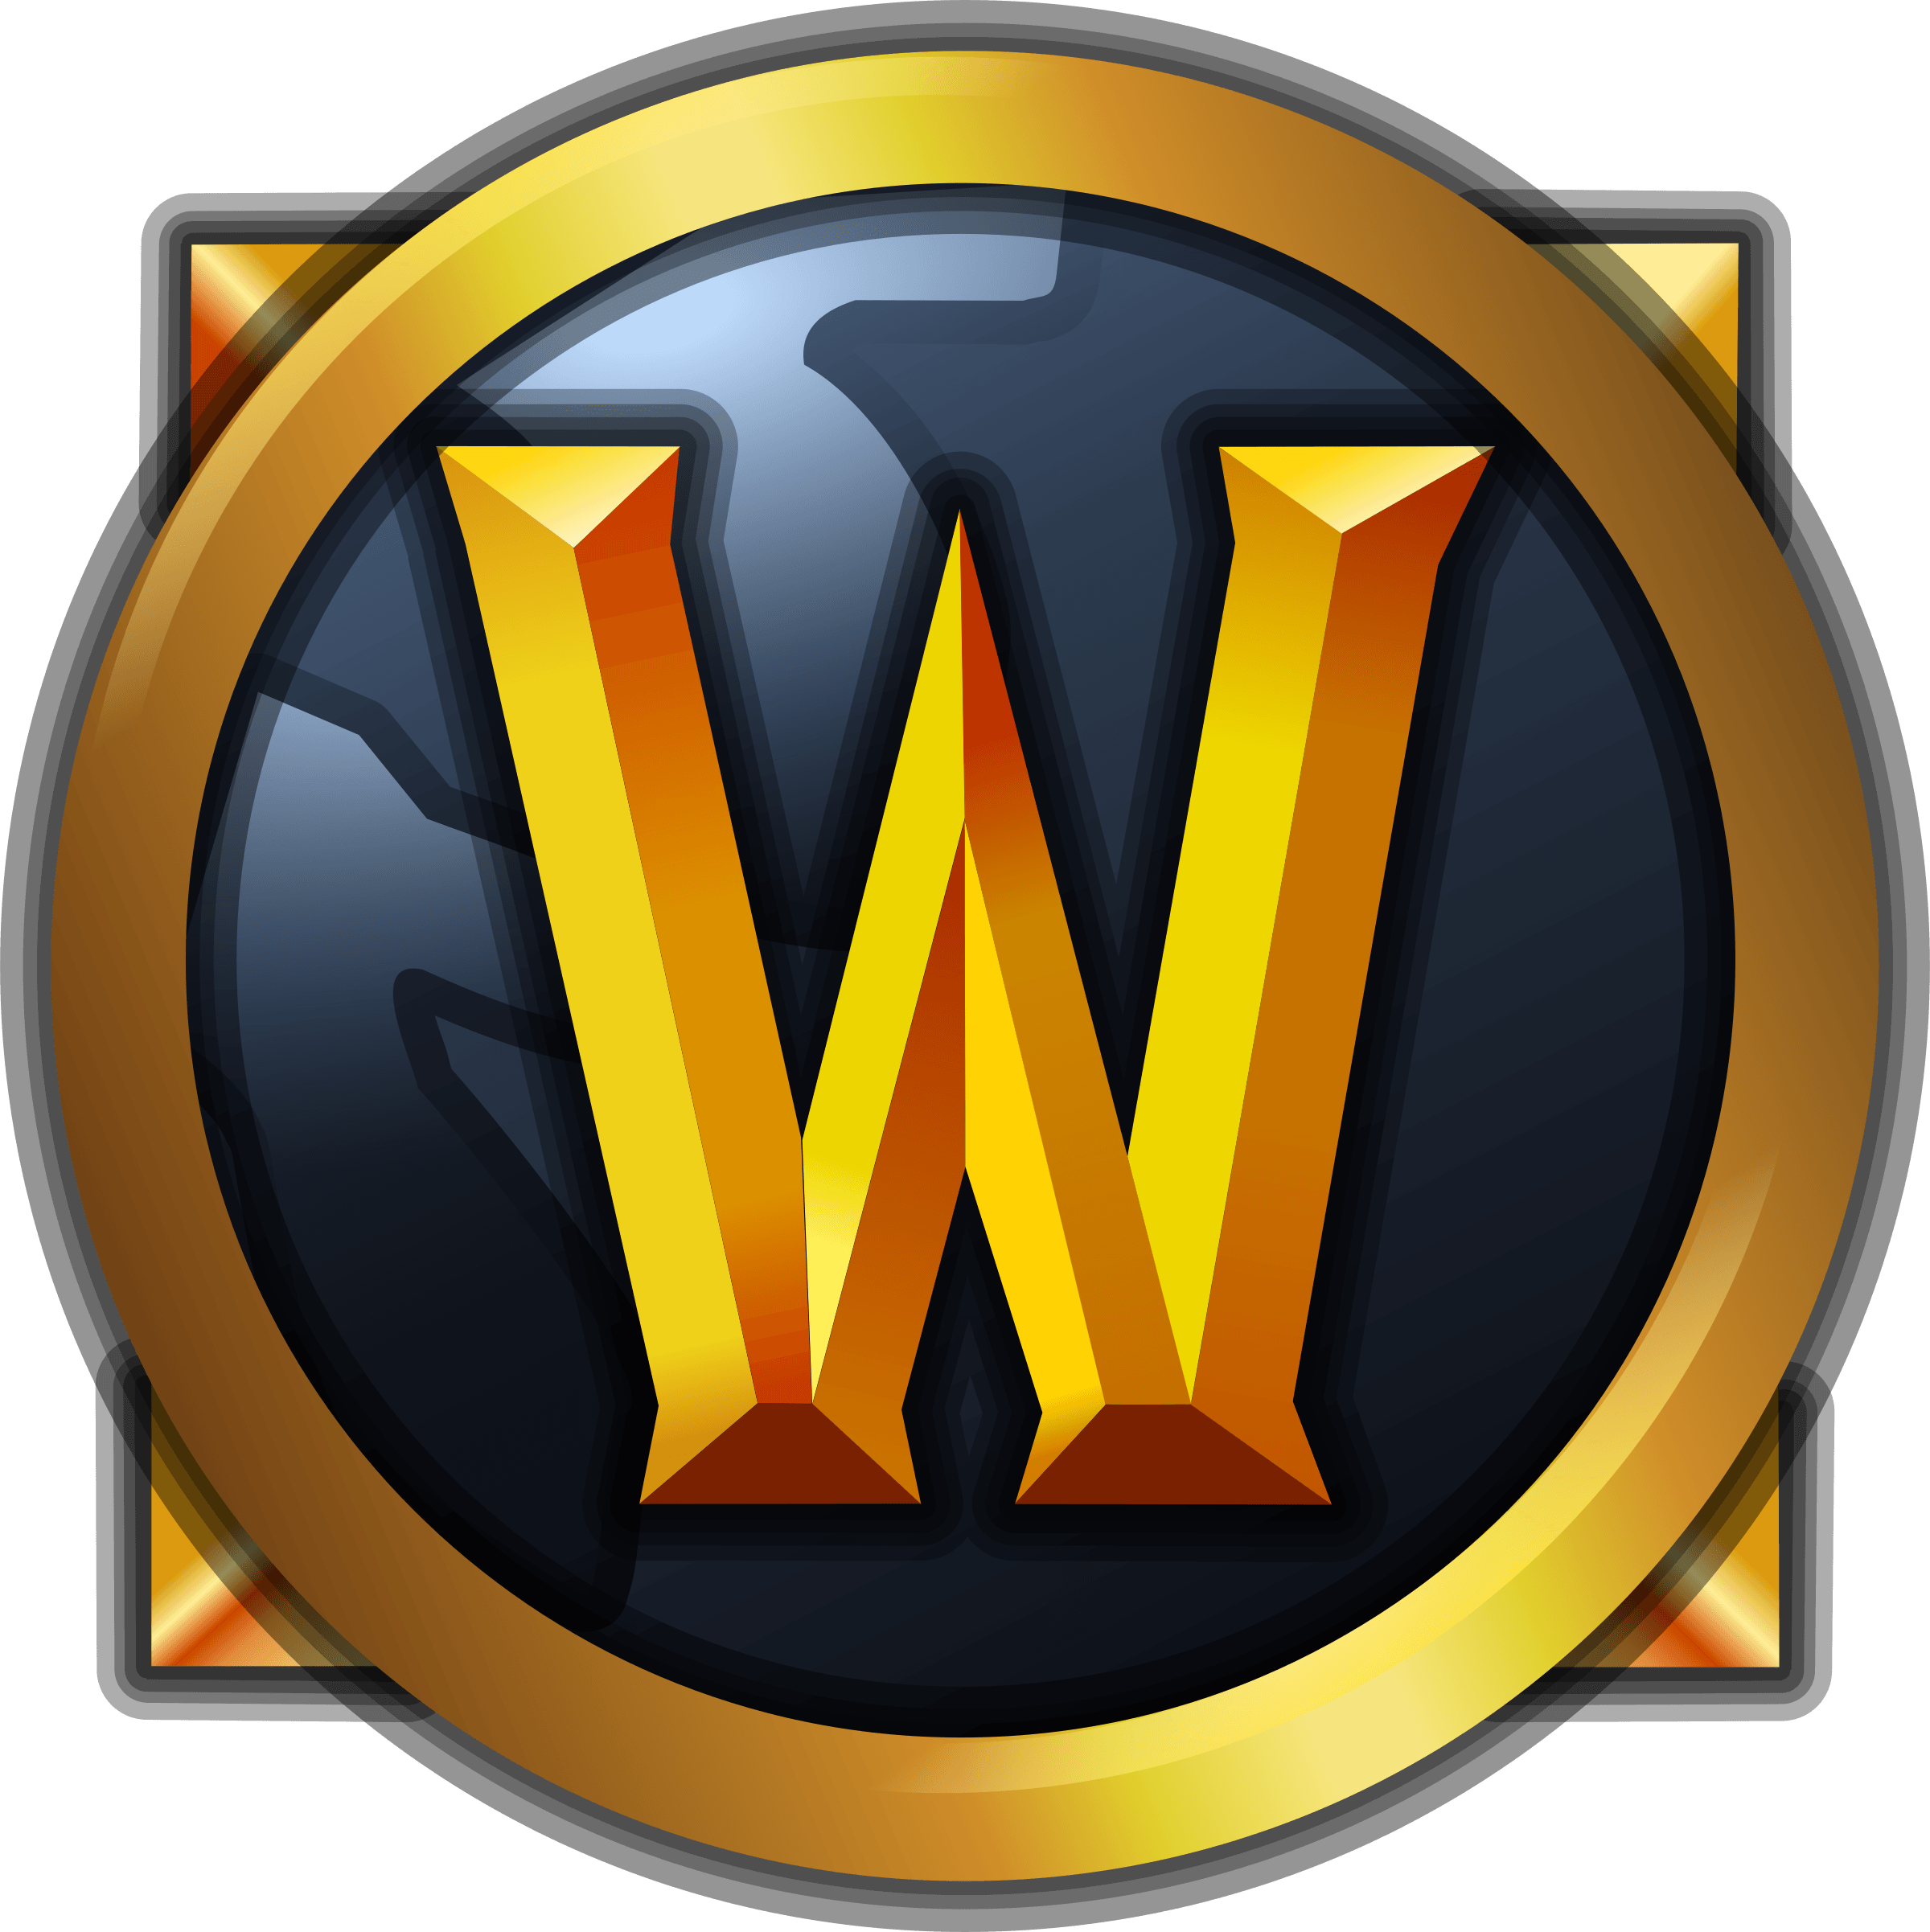 Warcraft Logo - World of Warcraft Logo PNG Transparent & SVG Vector - Freebie Supply